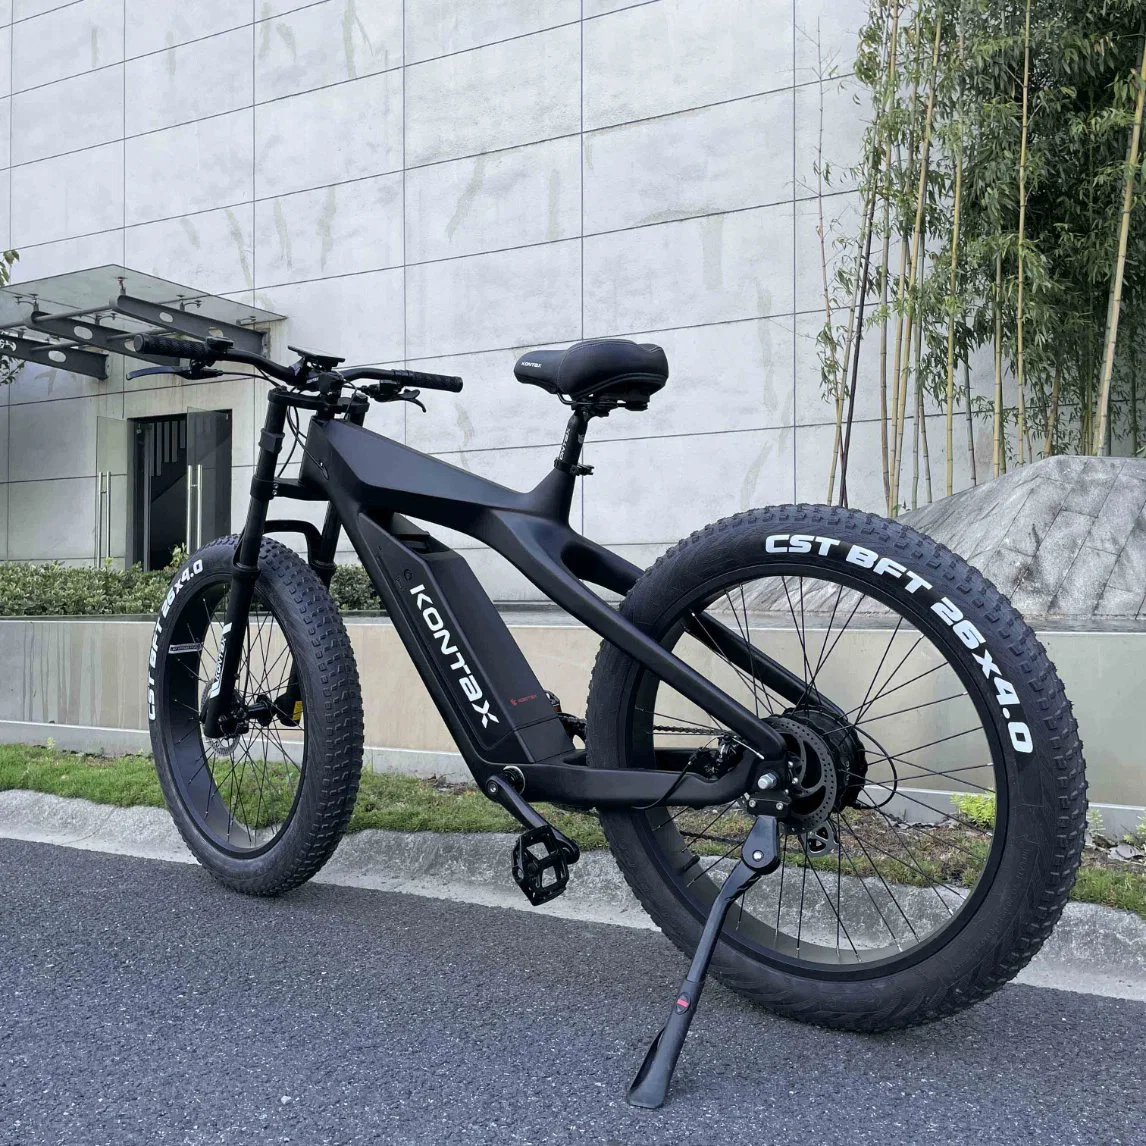 Kontax 48V13ah Bicicletas electrónicas 1000W Ebike em fibra de carbono gordura bicicletas auxiliar do pedal de bicicletas eléctricas da Roda